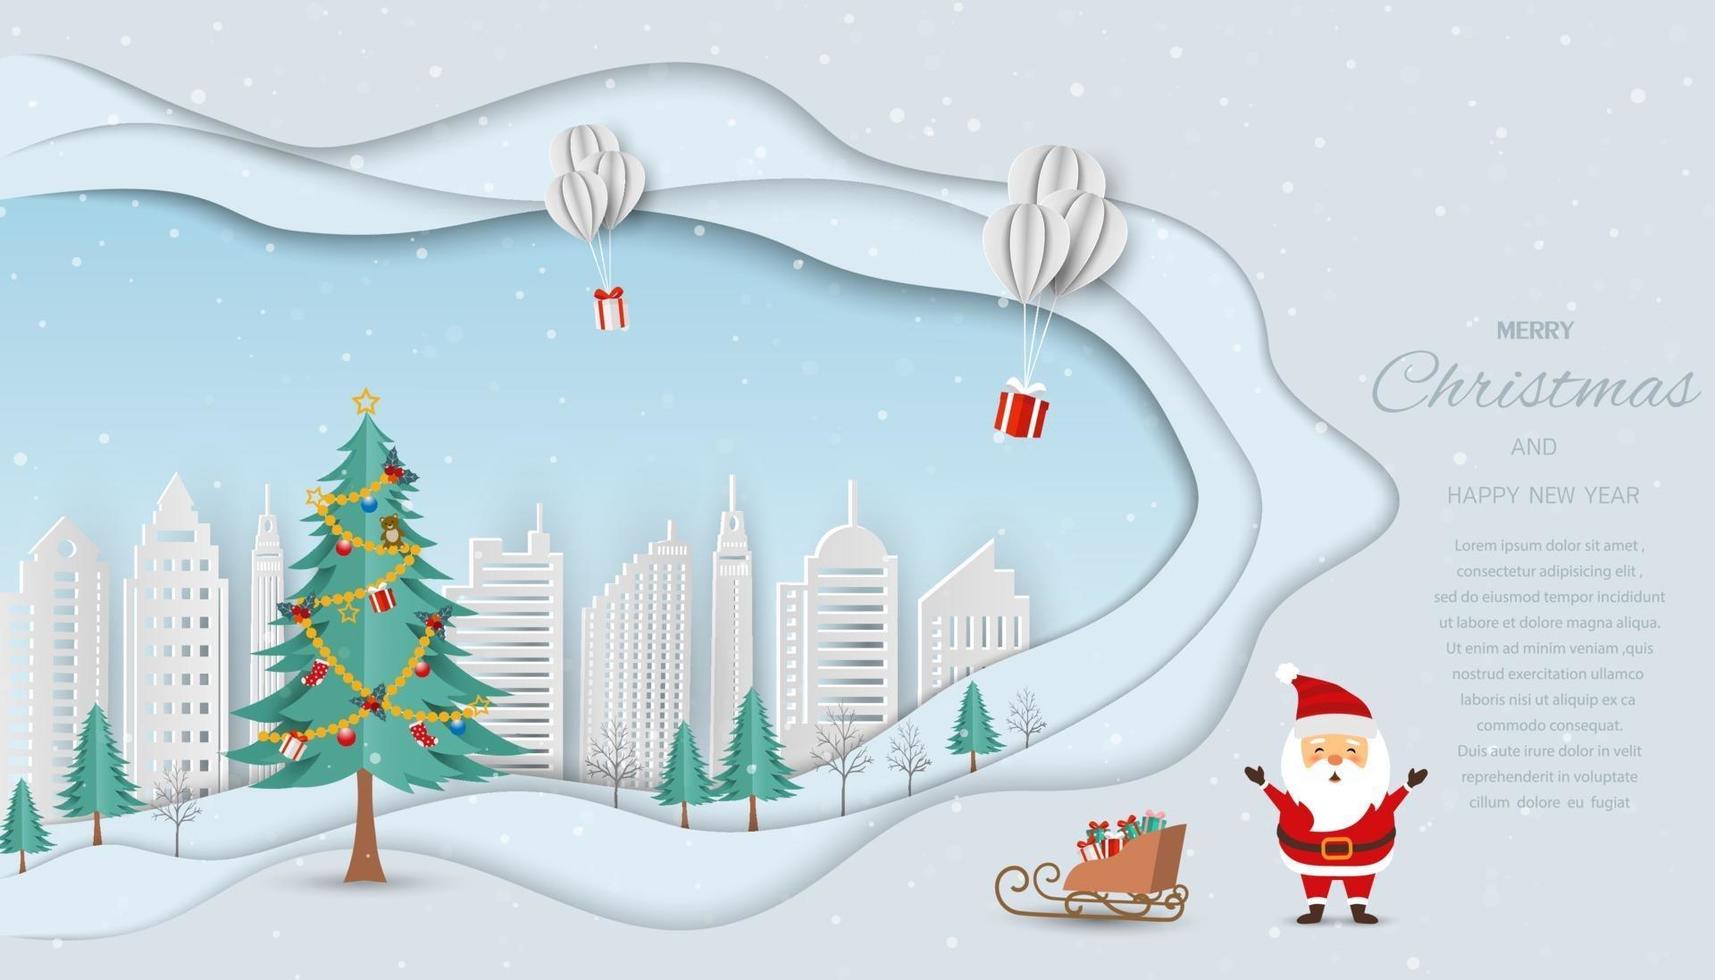 Frohe Weihnachten und ein frohes neues Jahr Grußkarte, Weihnachtsmann schickt Geschenke mit Luftballons vektor